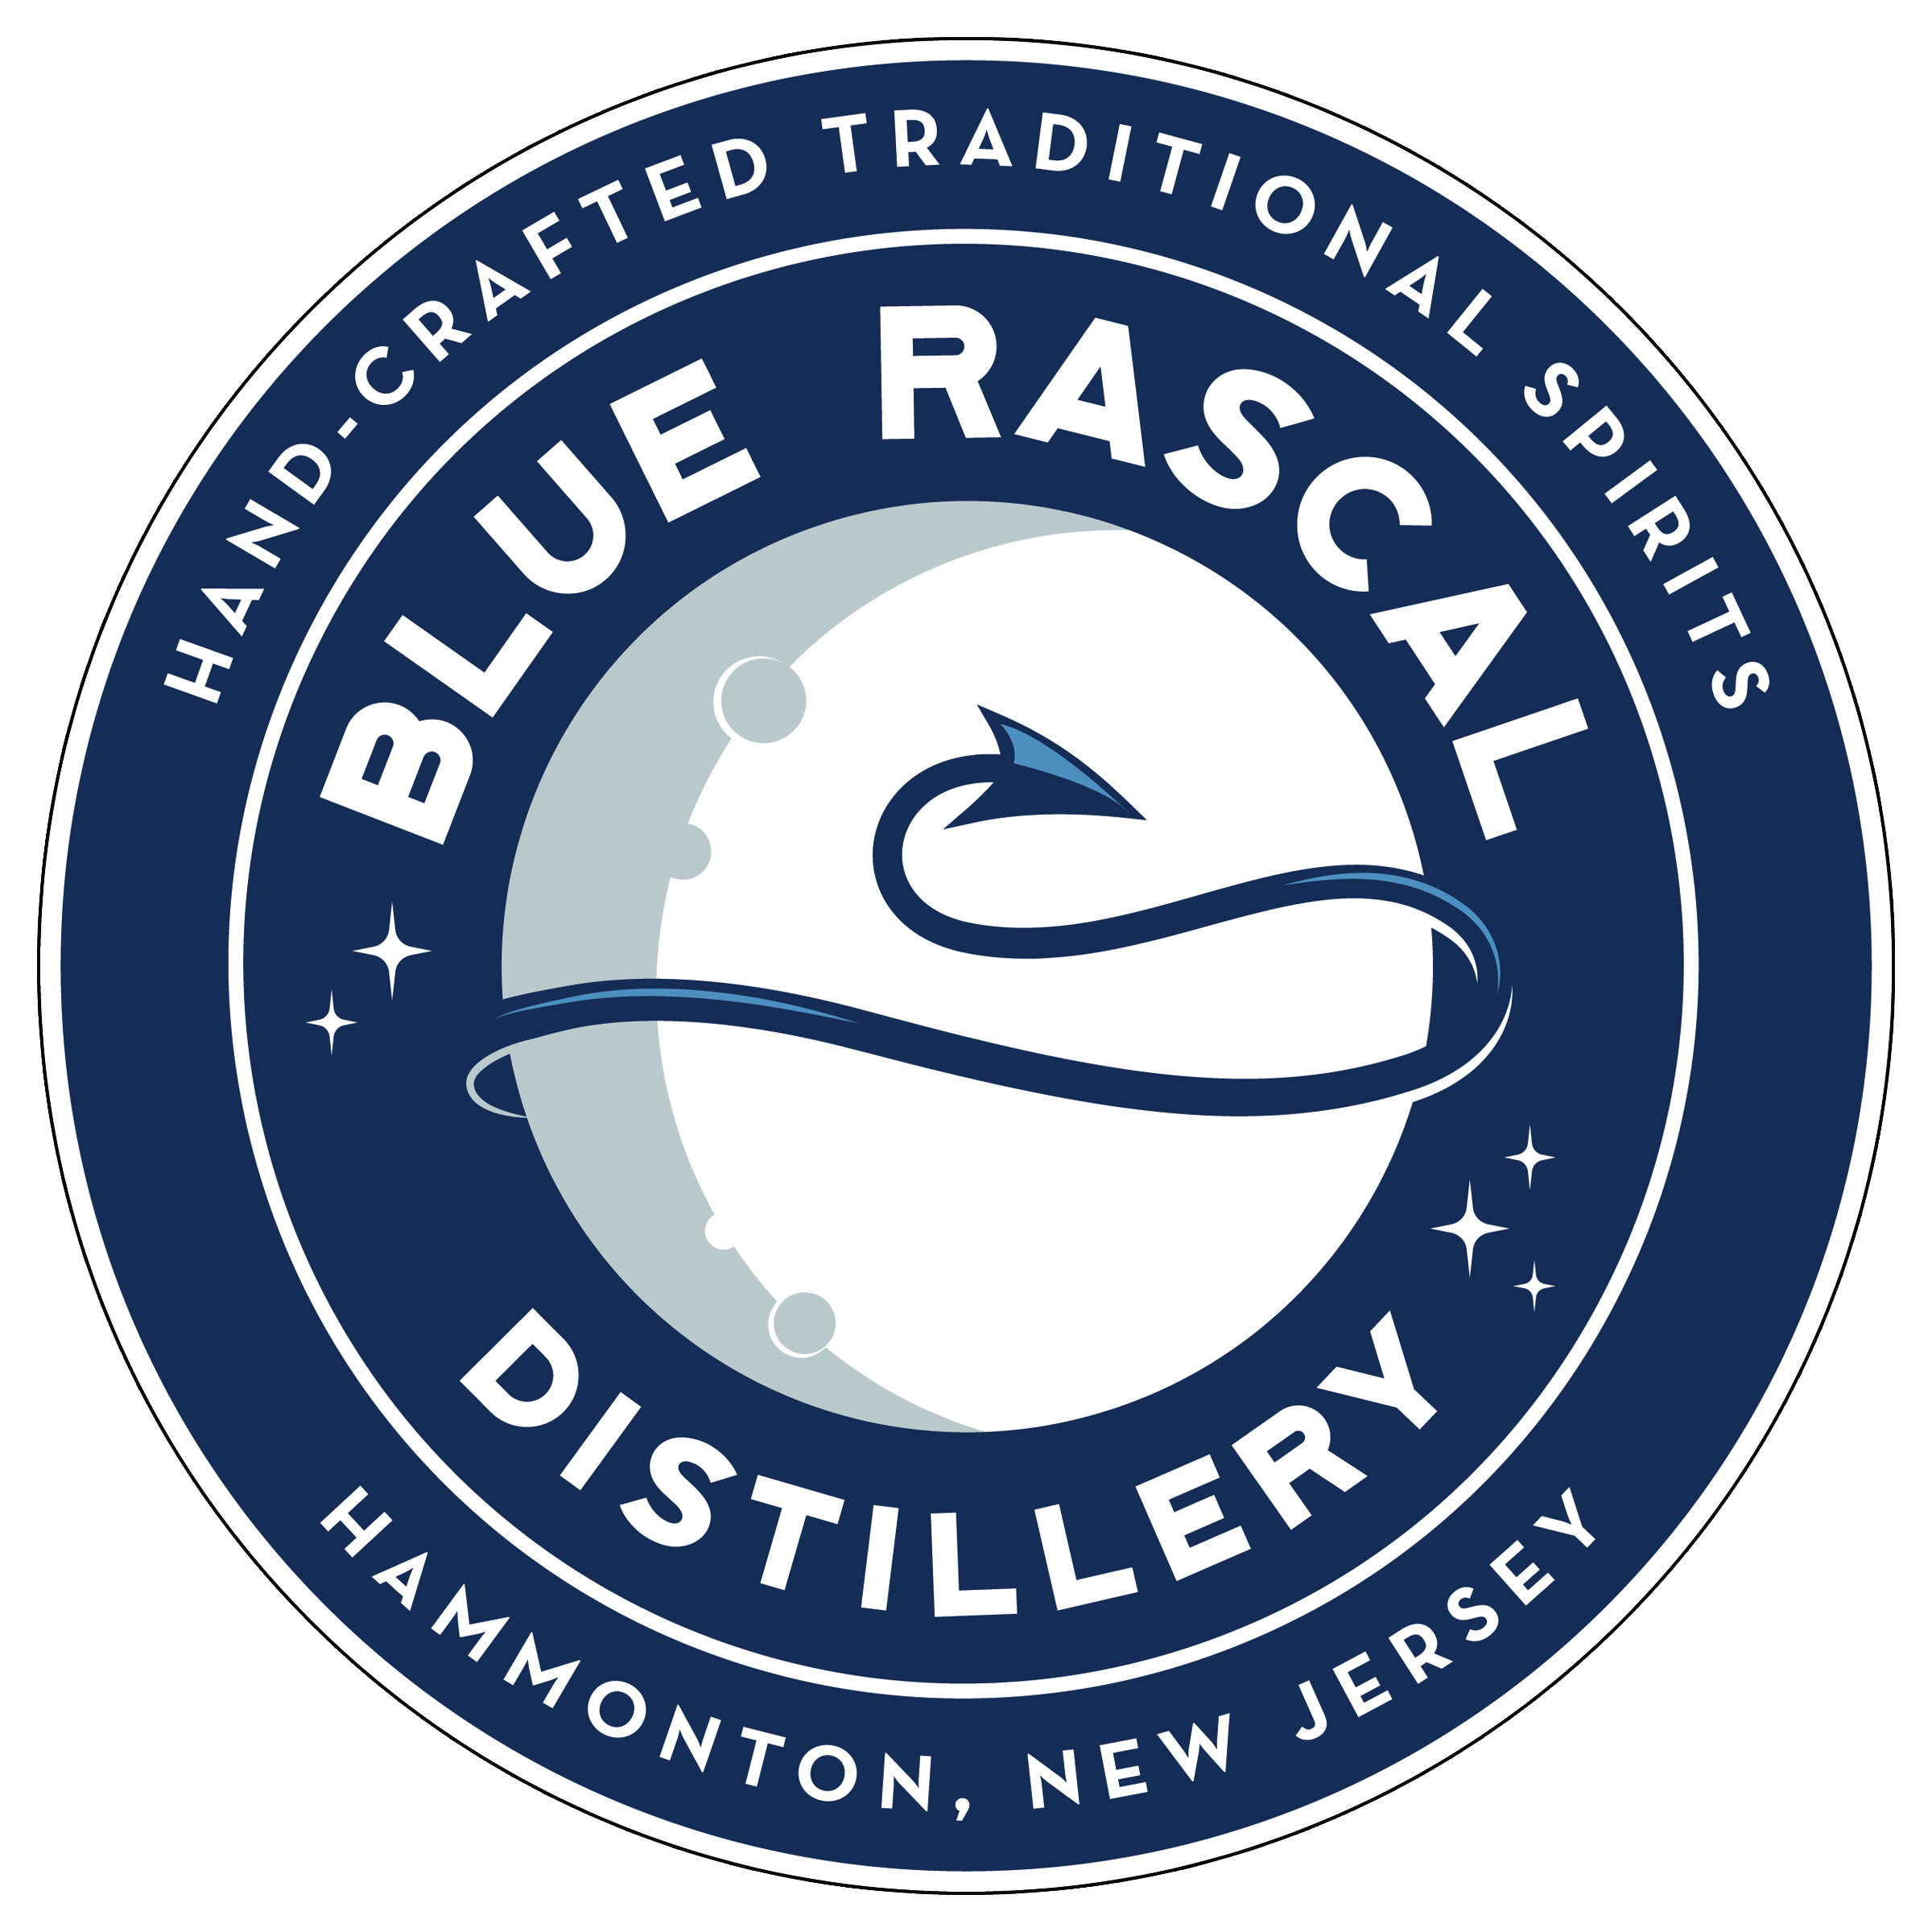 Blue Rascal Distillery